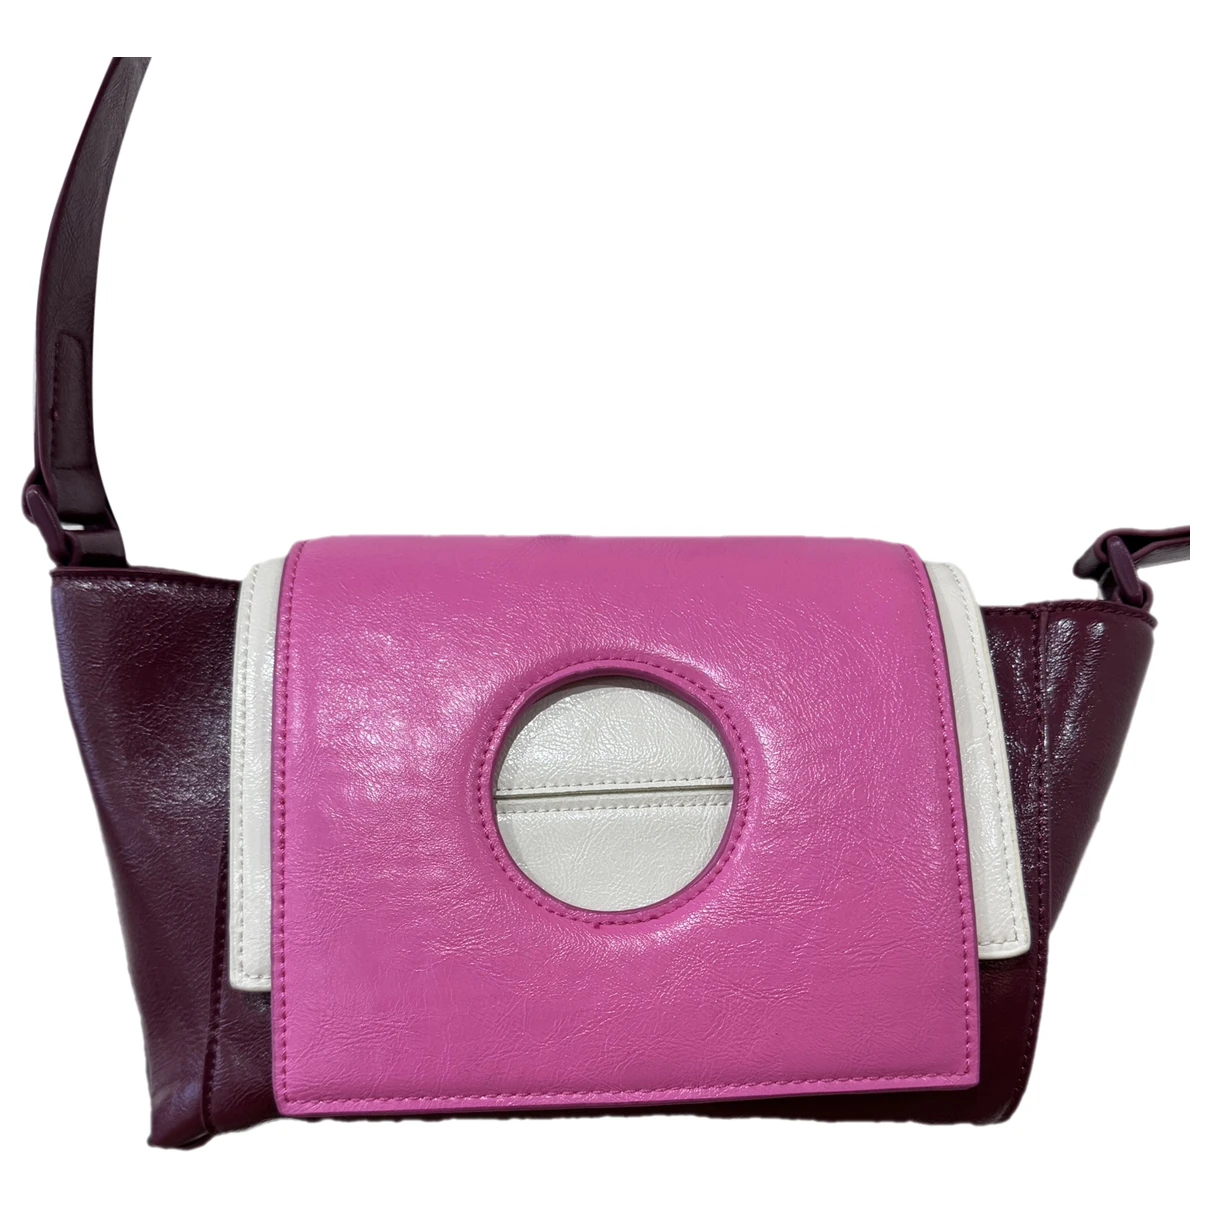 Pre-owned Hvisk Leather Travel Bag In Pink